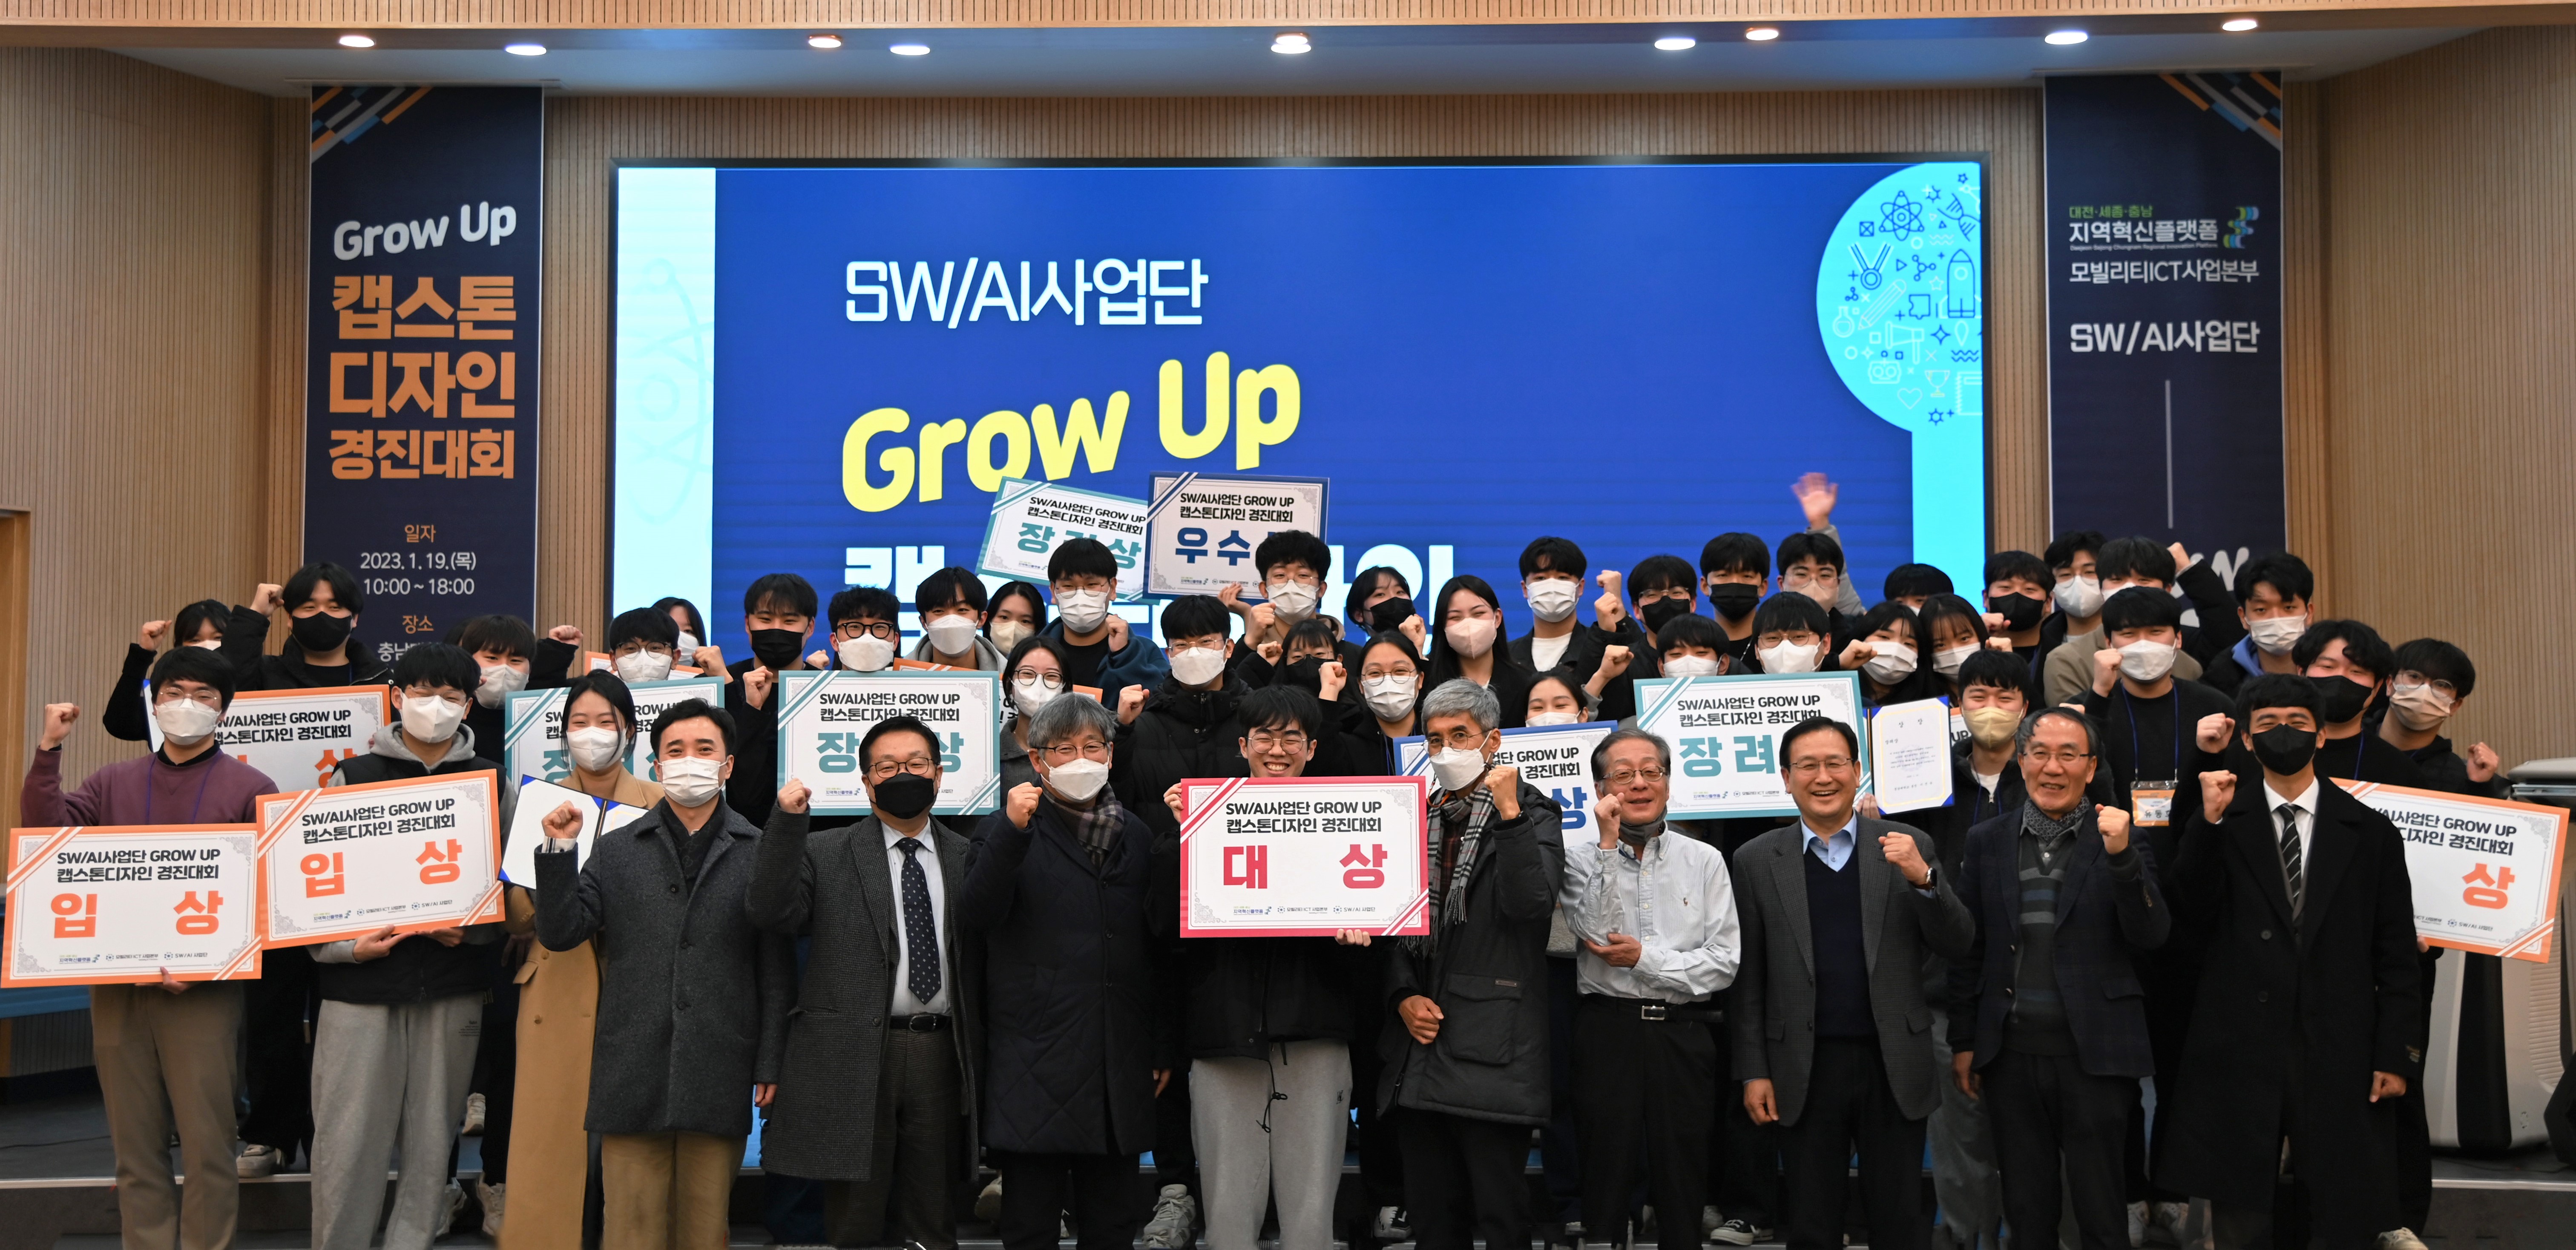 DSC 지역혁신플랫폼, ‘SW/AI사업단 Grow Up 캡스톤디자인 경진대회’ 개최 사진